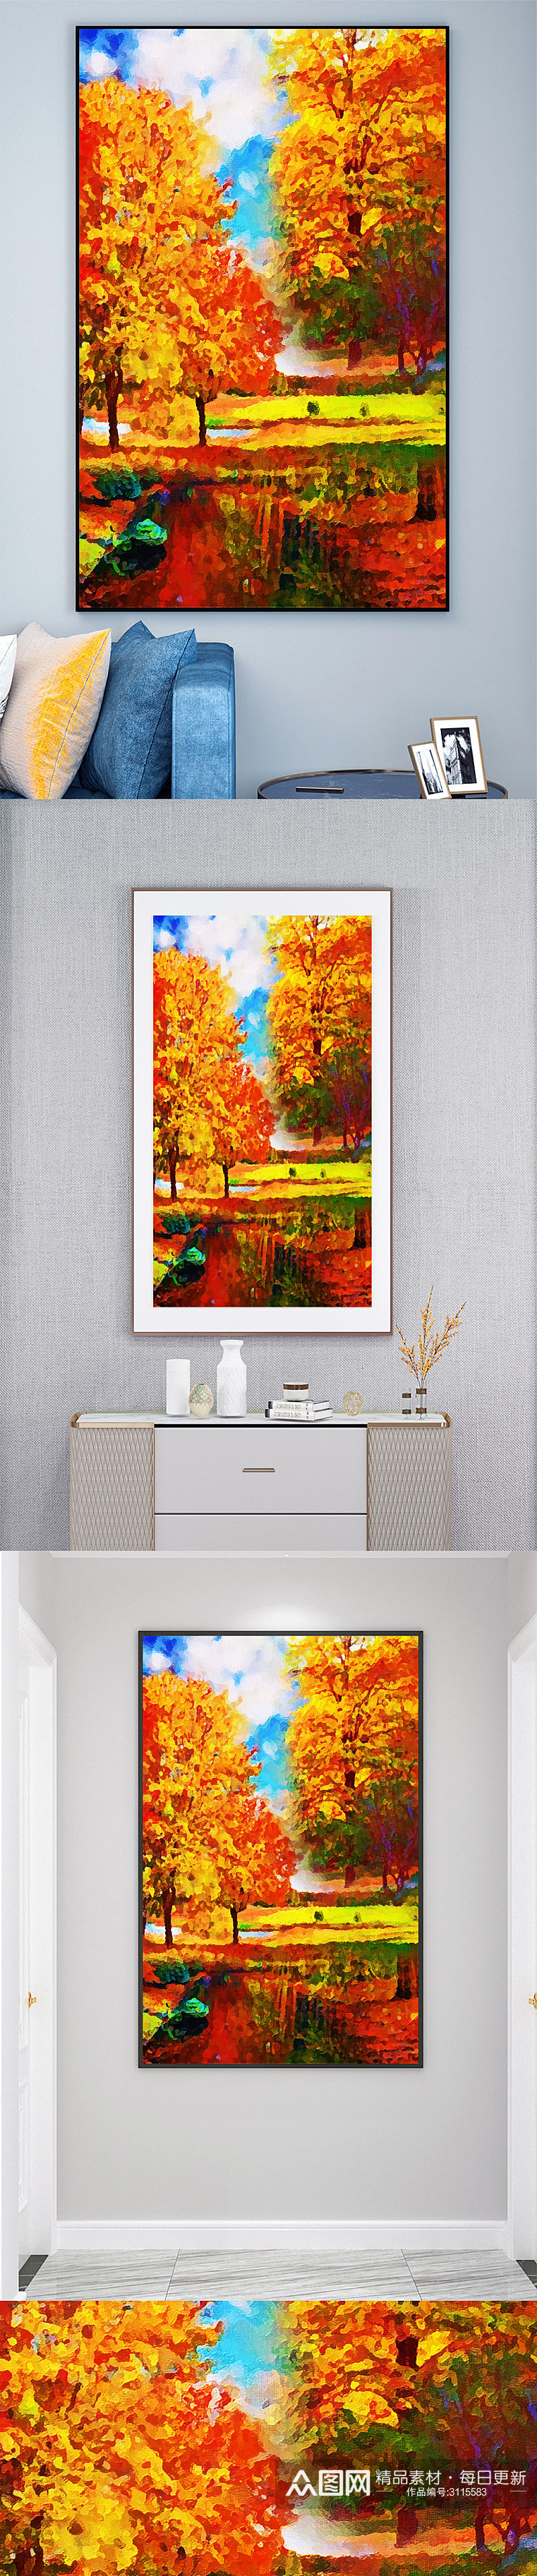 油画森林秋季风景壁画装饰画素材